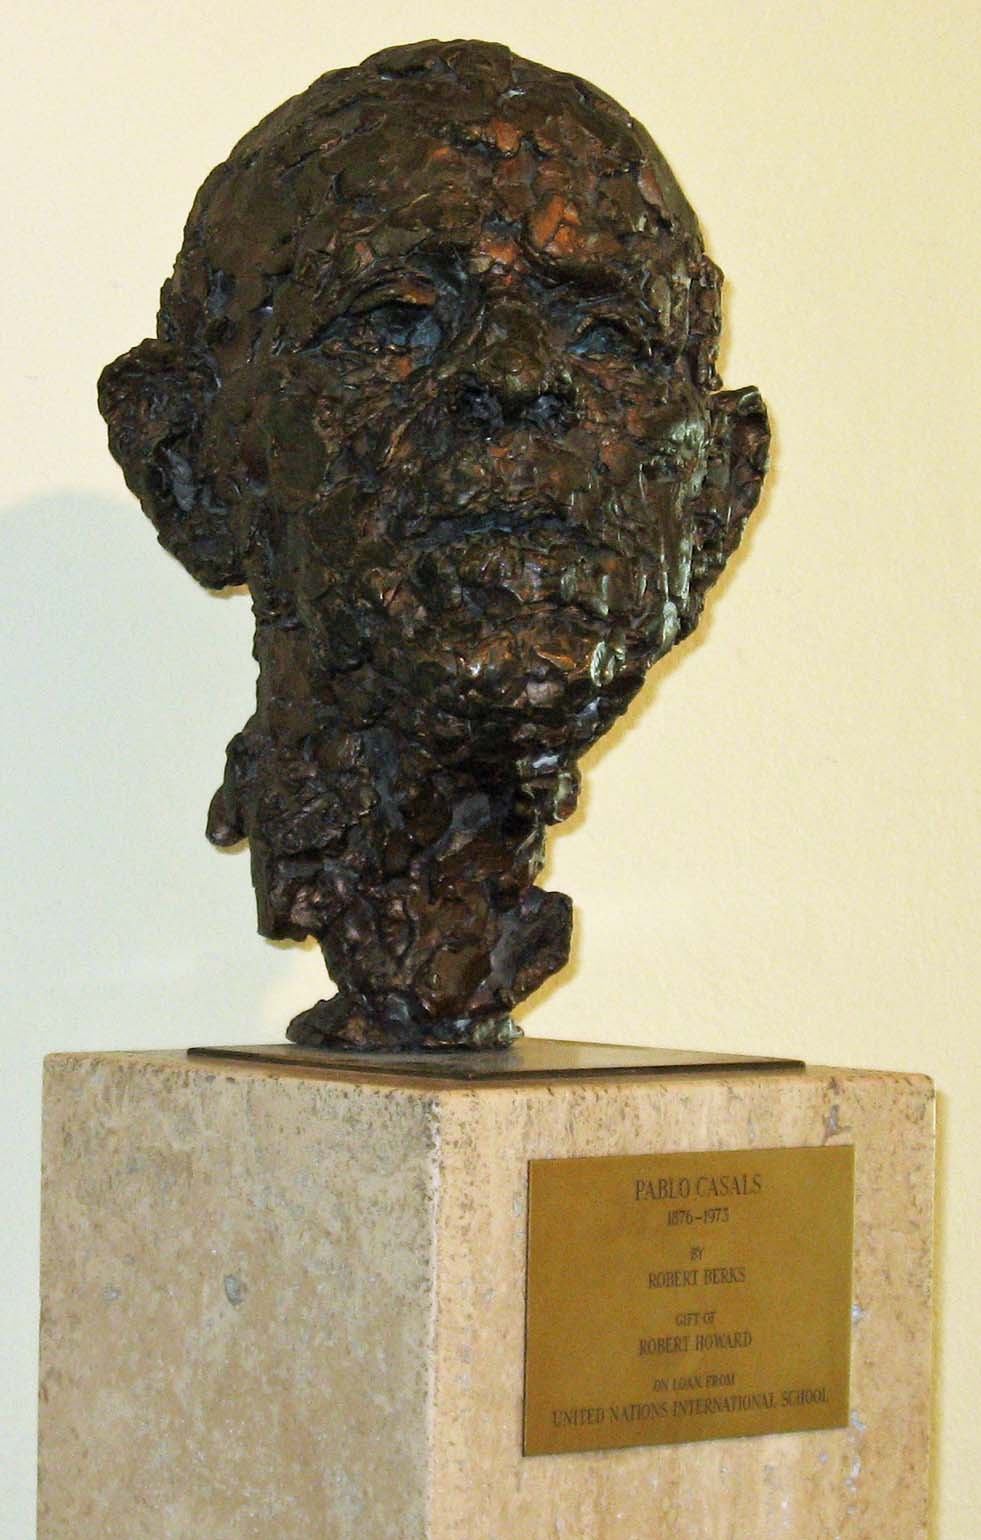 تمثال نصفي لبابلو كاسالس, UNNY139L, 1977, UN International School